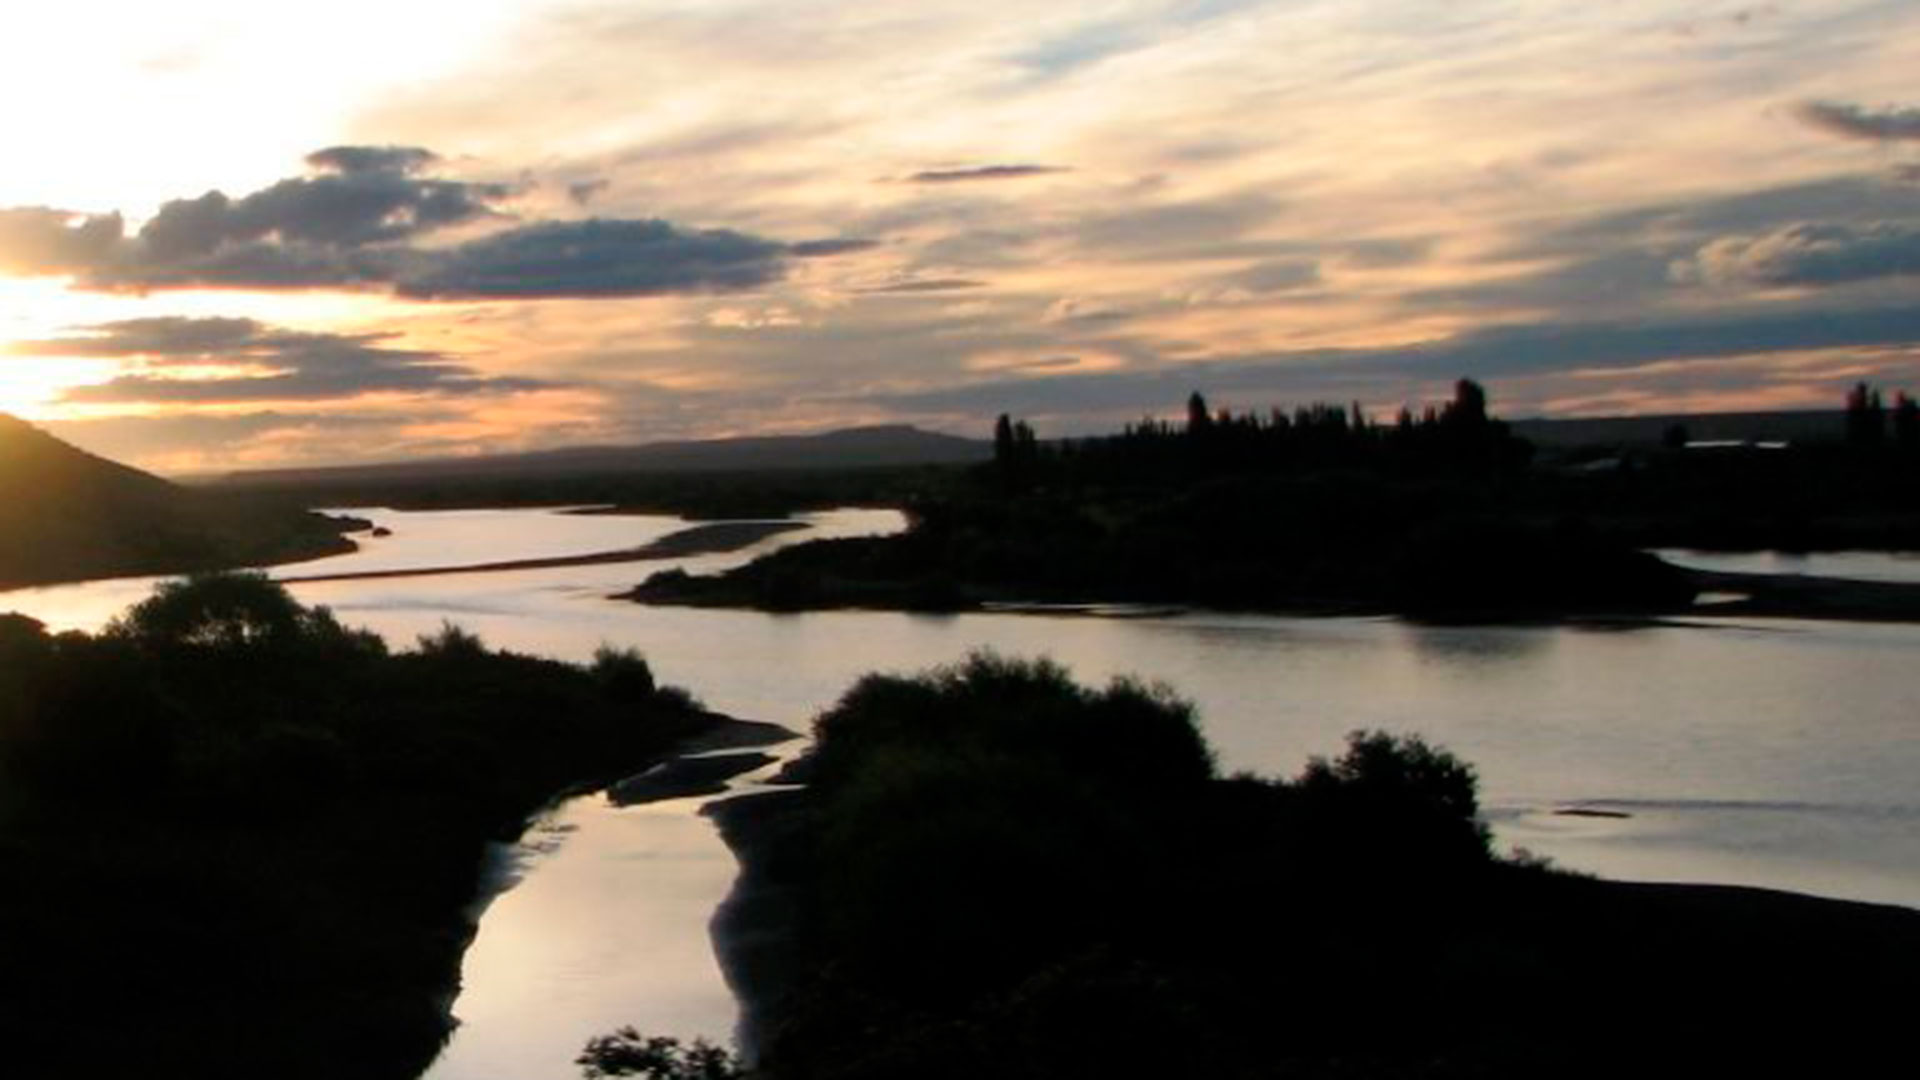 El río Santa Cruz se desbordaría una vez terminada la construcción de la represa. Foto: cortesía de Flickr/Mariono Manuel.